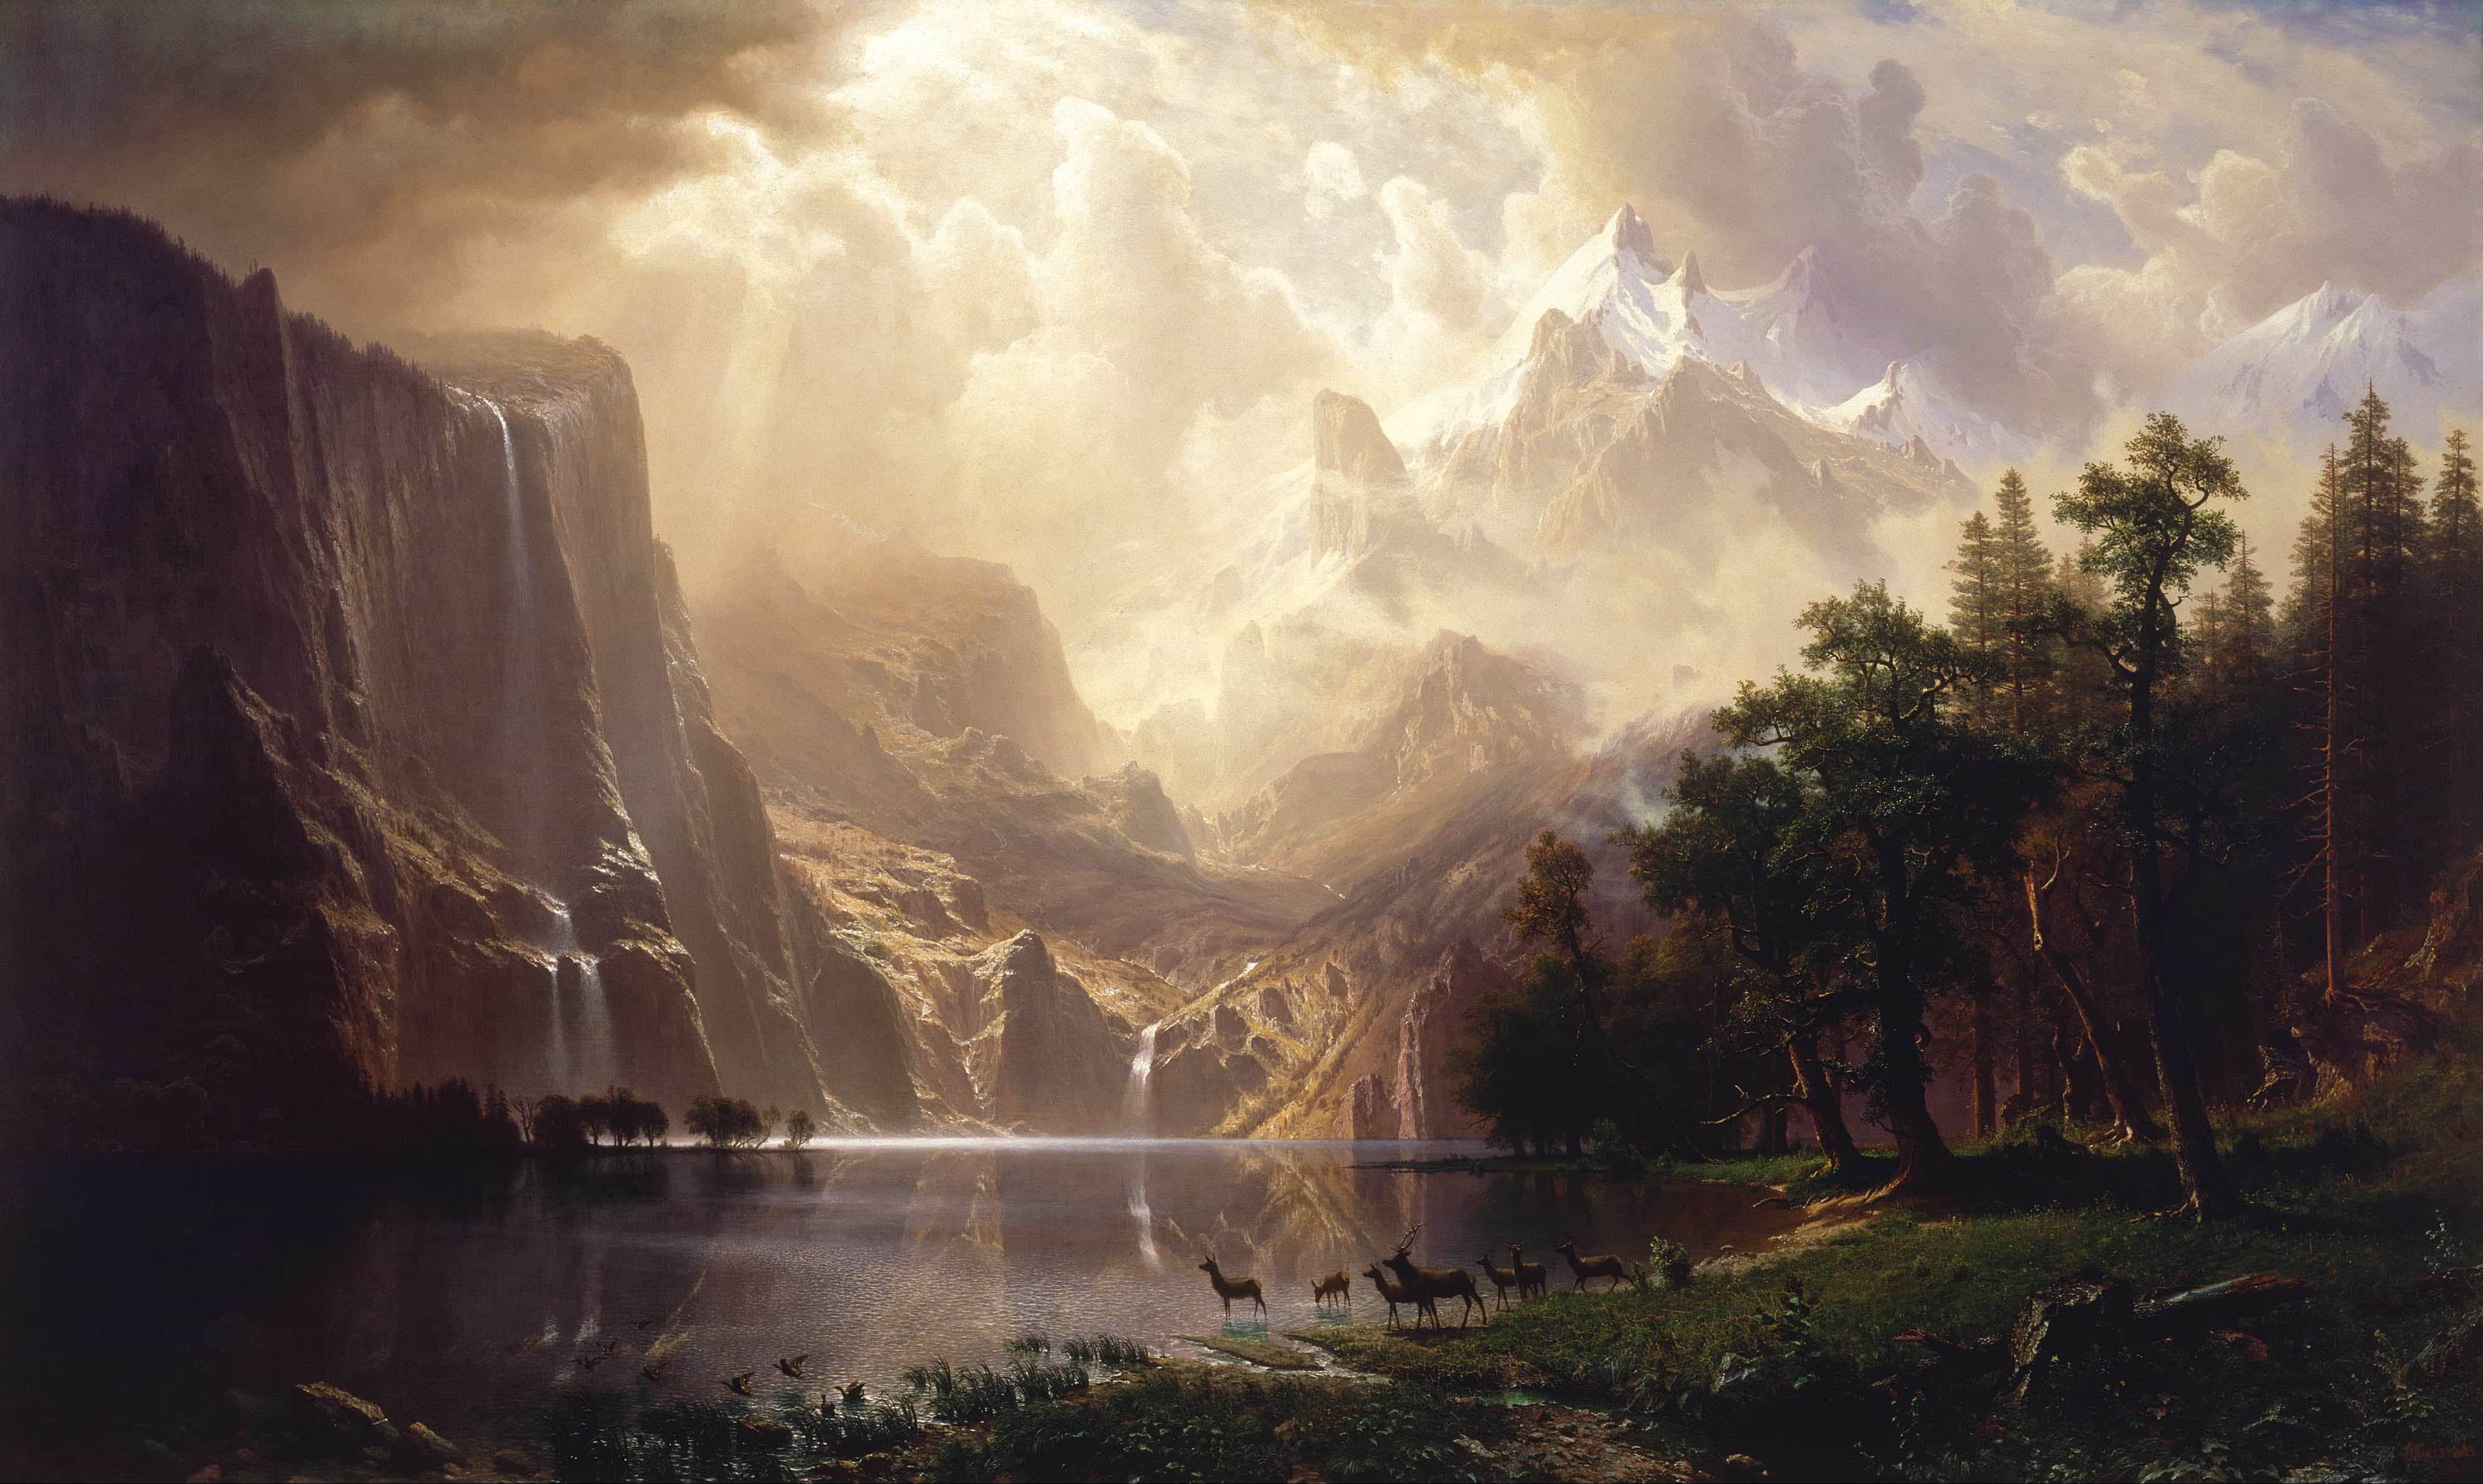 《シエラネバダ山脈》 アルバート・ビアシュタット 1868年